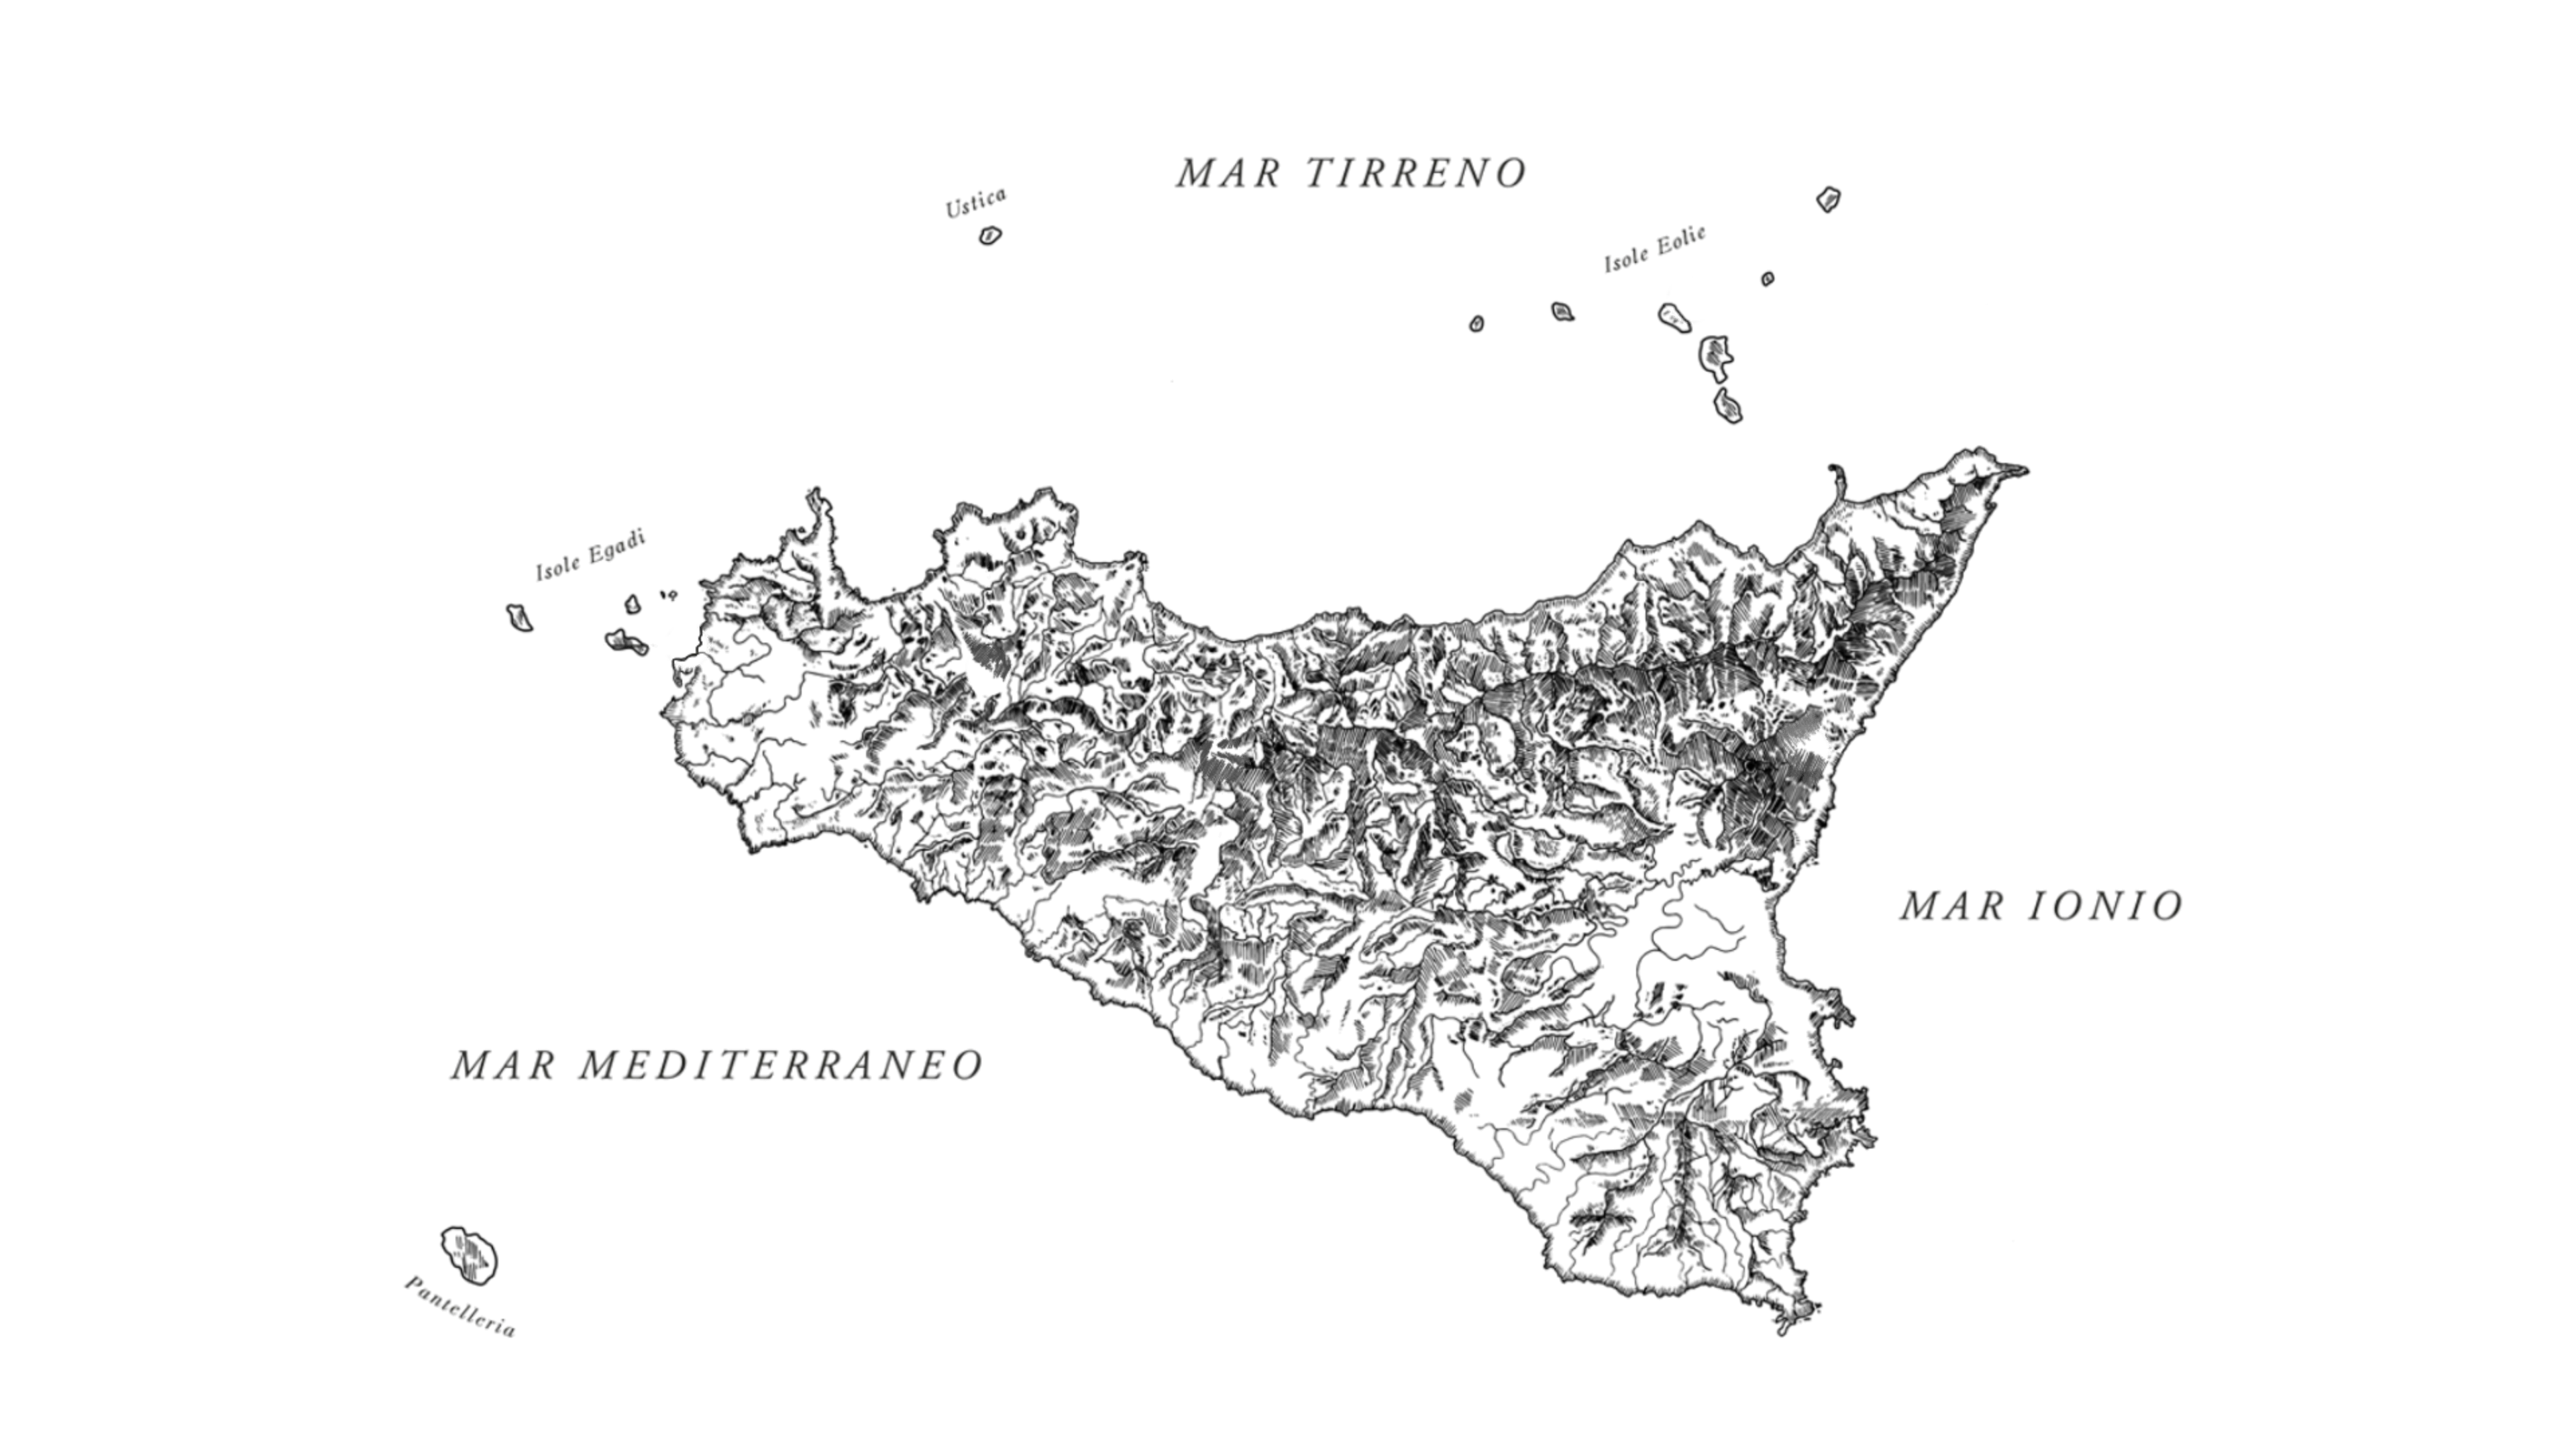 bg map